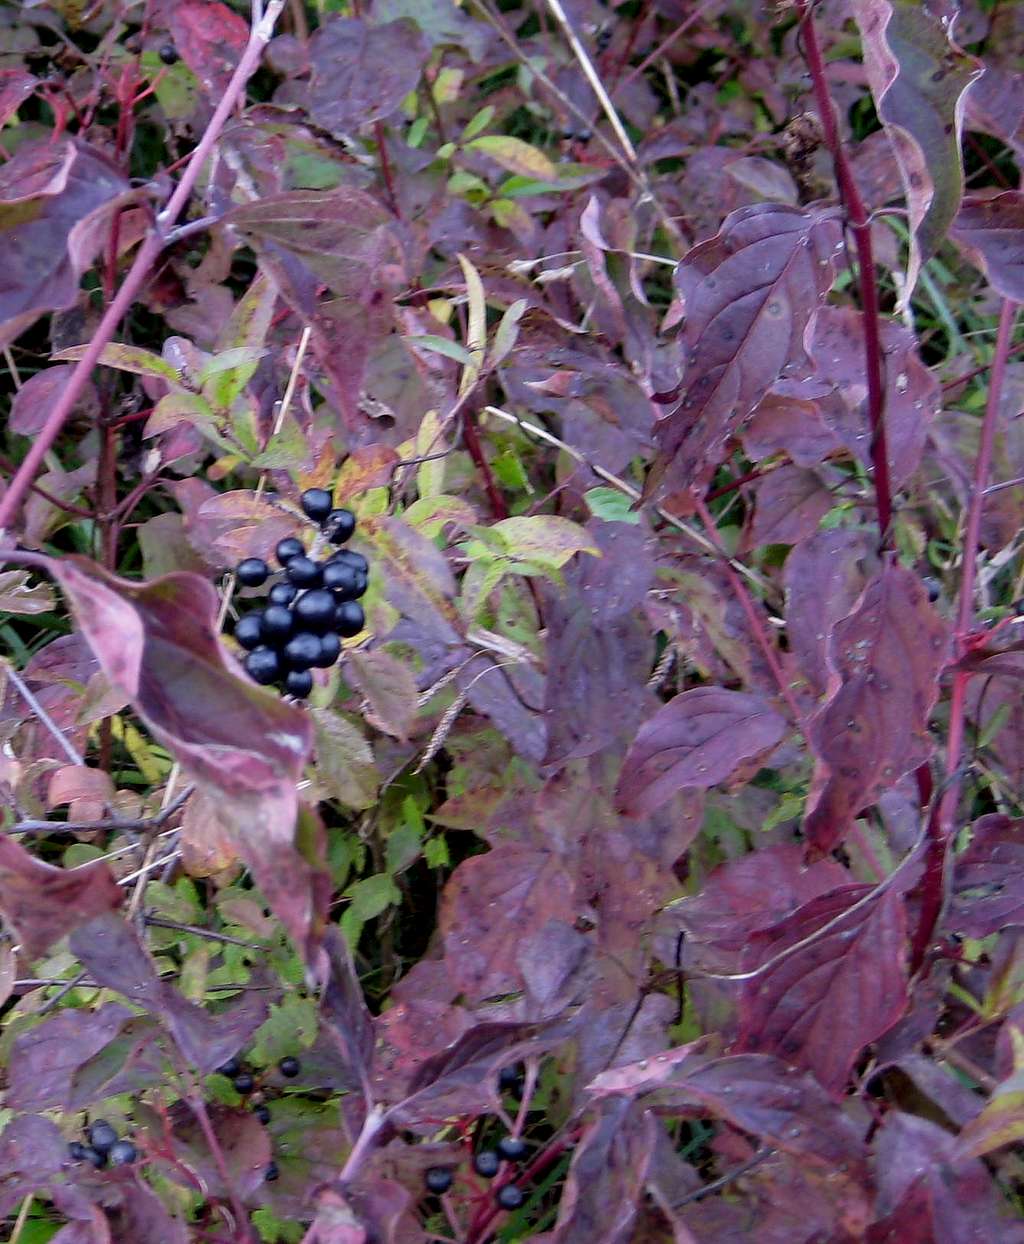 Black berries